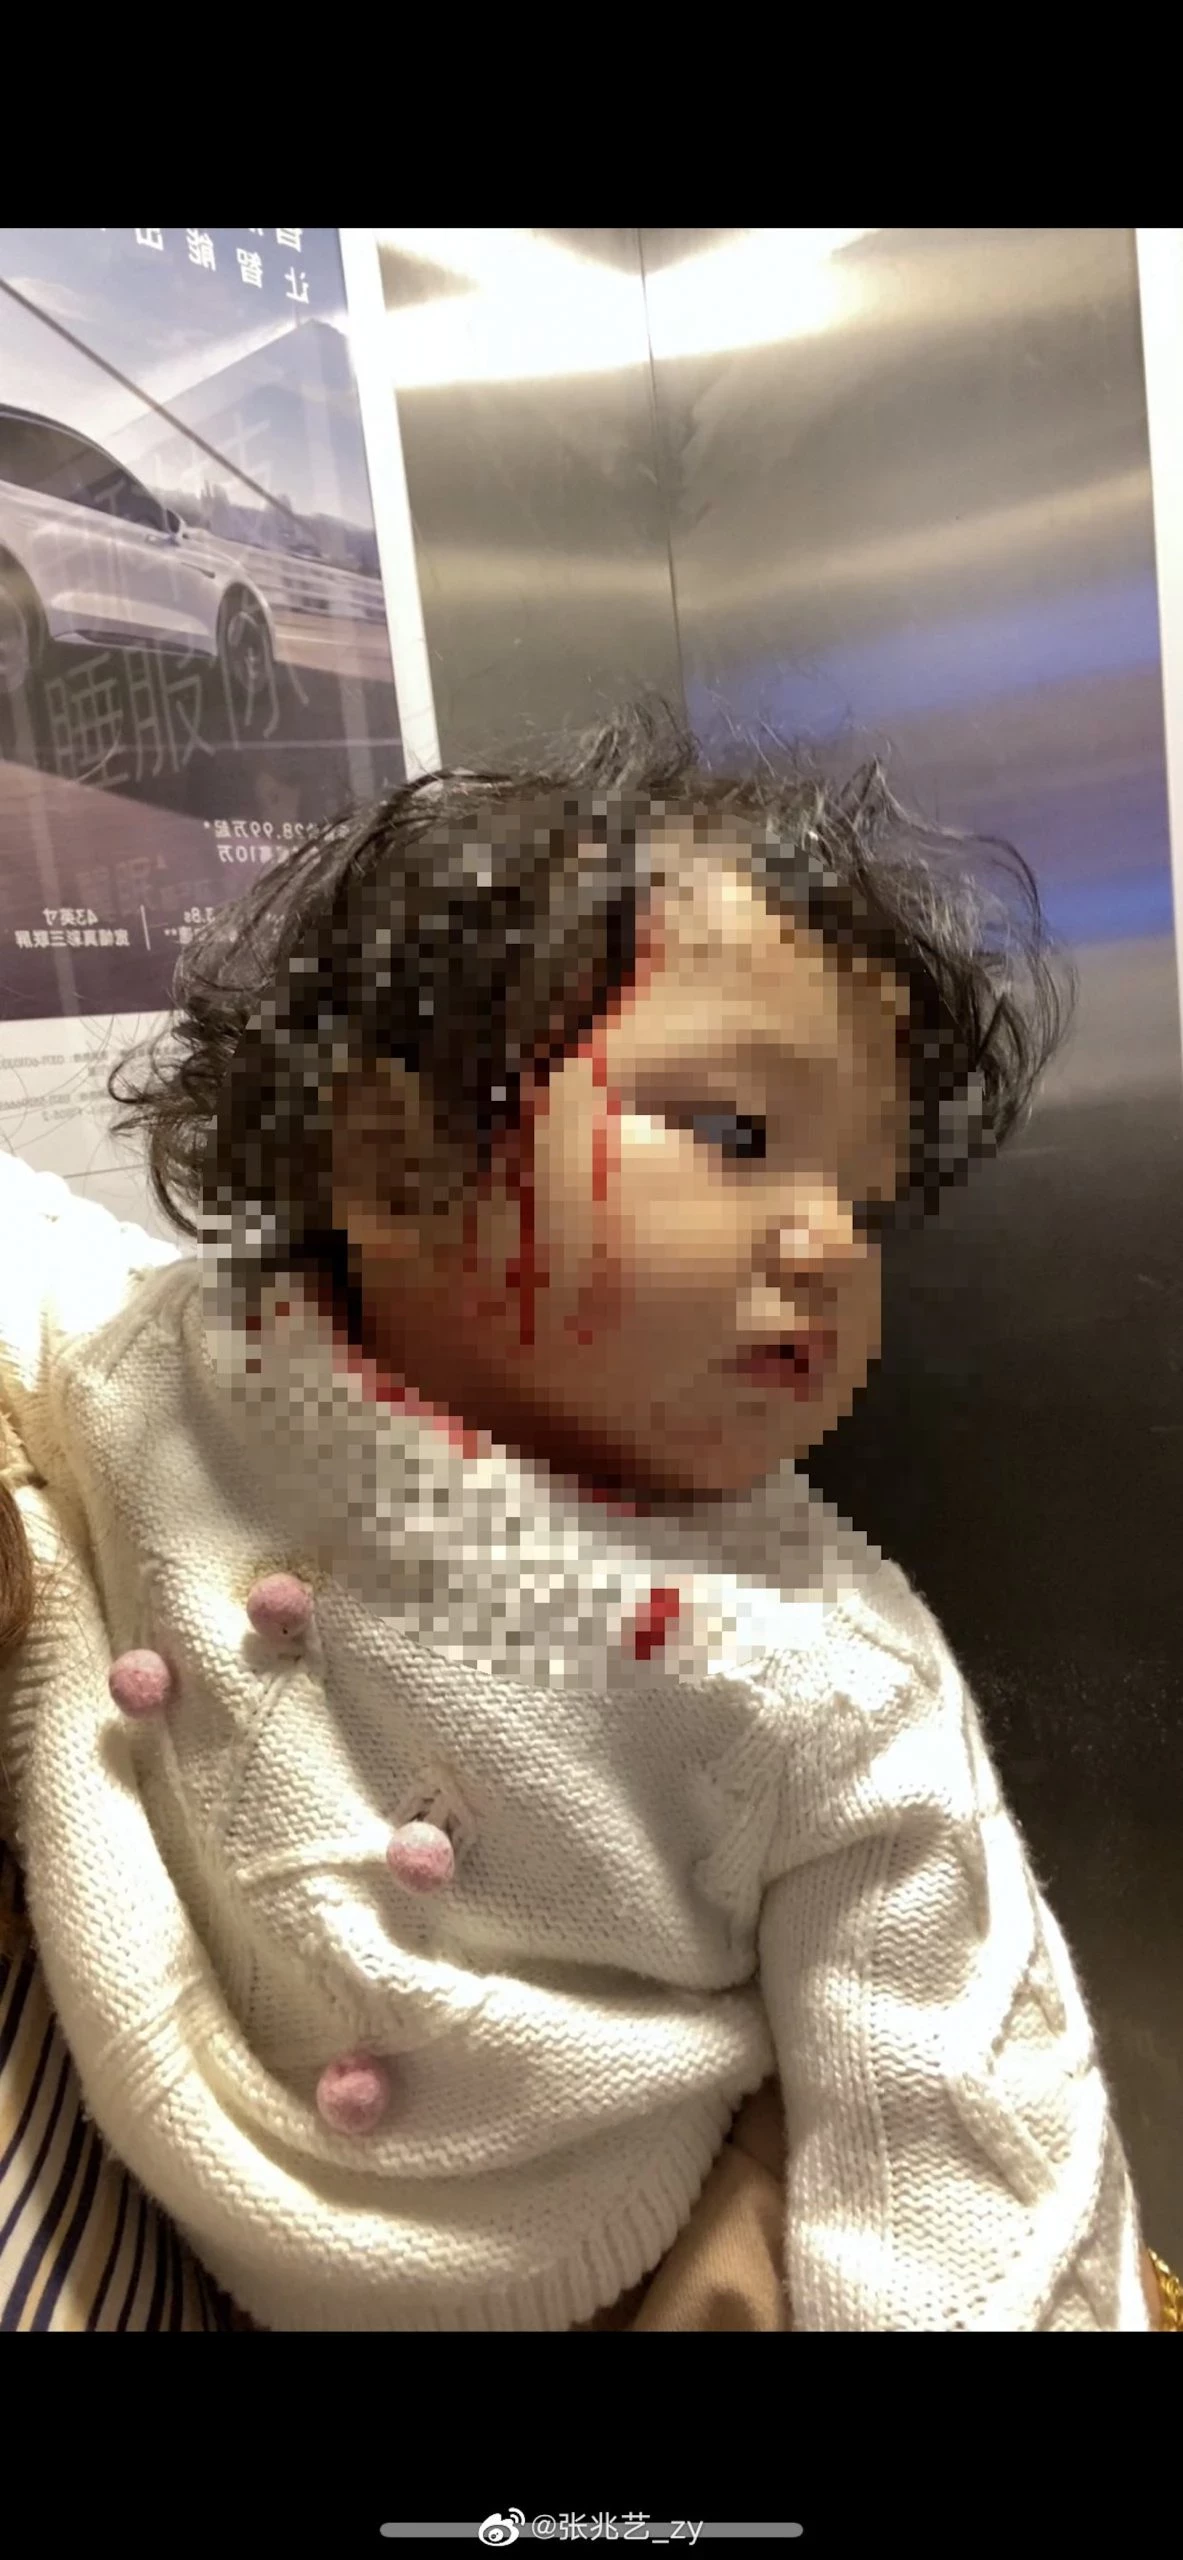 中國女星「浴室玻璃門」突然爆炸⚡1歲女兒被炸到滿臉血！老公也破相！